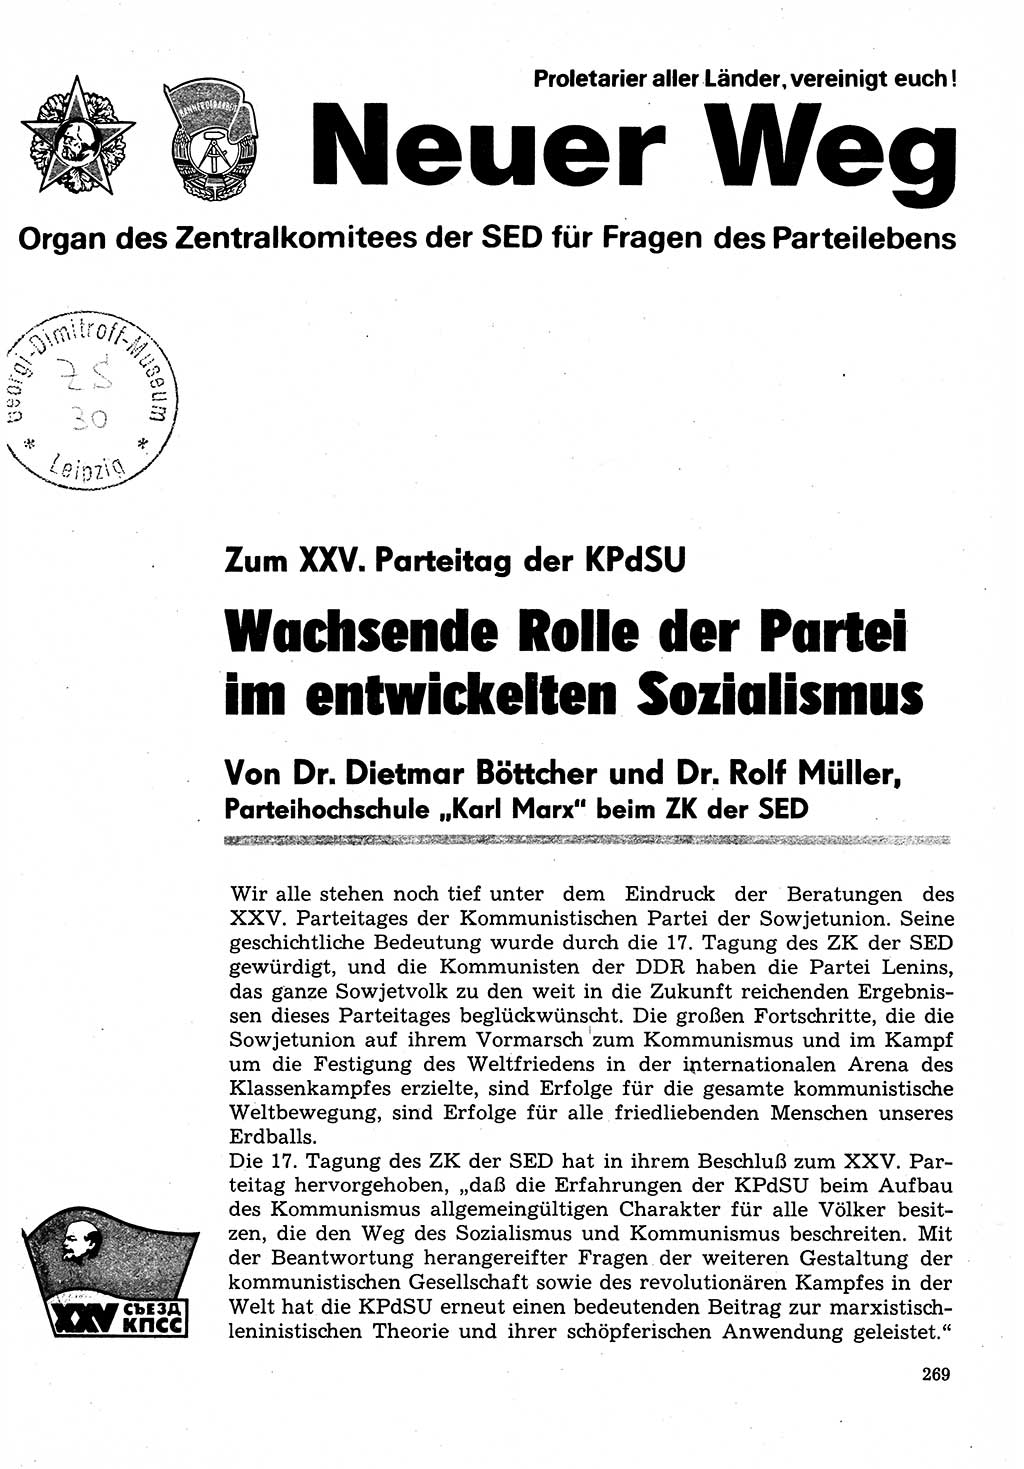 Neuer Weg (NW), Organ des Zentralkomitees (ZK) der SED (Sozialistische Einheitspartei Deutschlands) für Fragen des Parteilebens, 31. Jahrgang [Deutsche Demokratische Republik (DDR)] 1976, Seite 269 (NW ZK SED DDR 1976, S. 269)